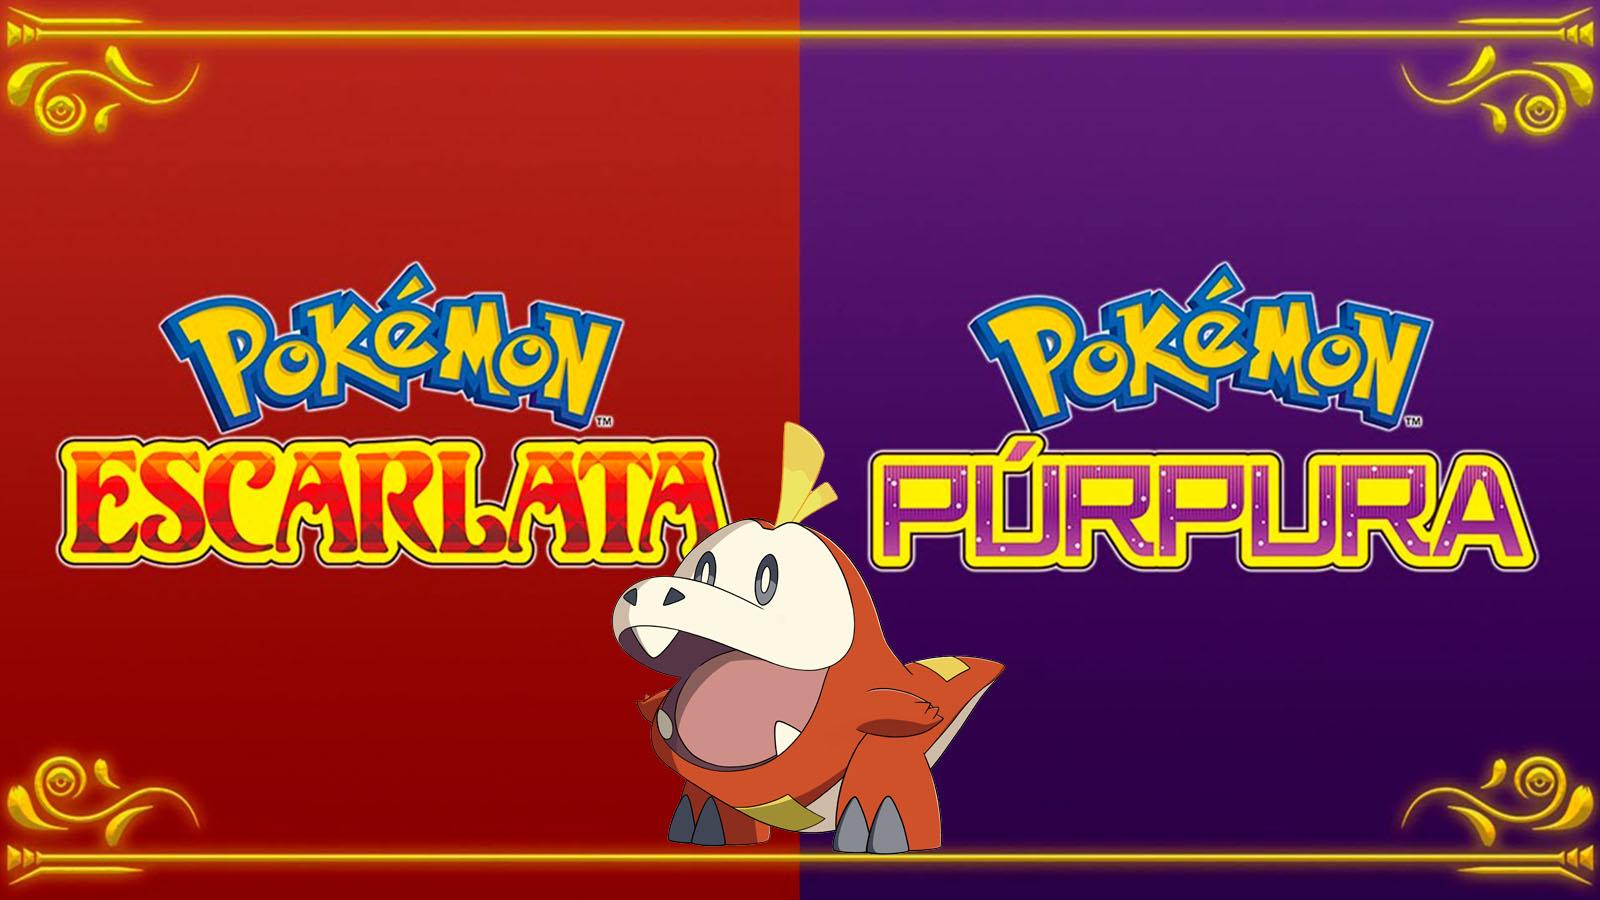 Evento Llamas oscuras en Pokémon Go: ¿camino de tipo Siniestro o Fuego? -  Dexerto